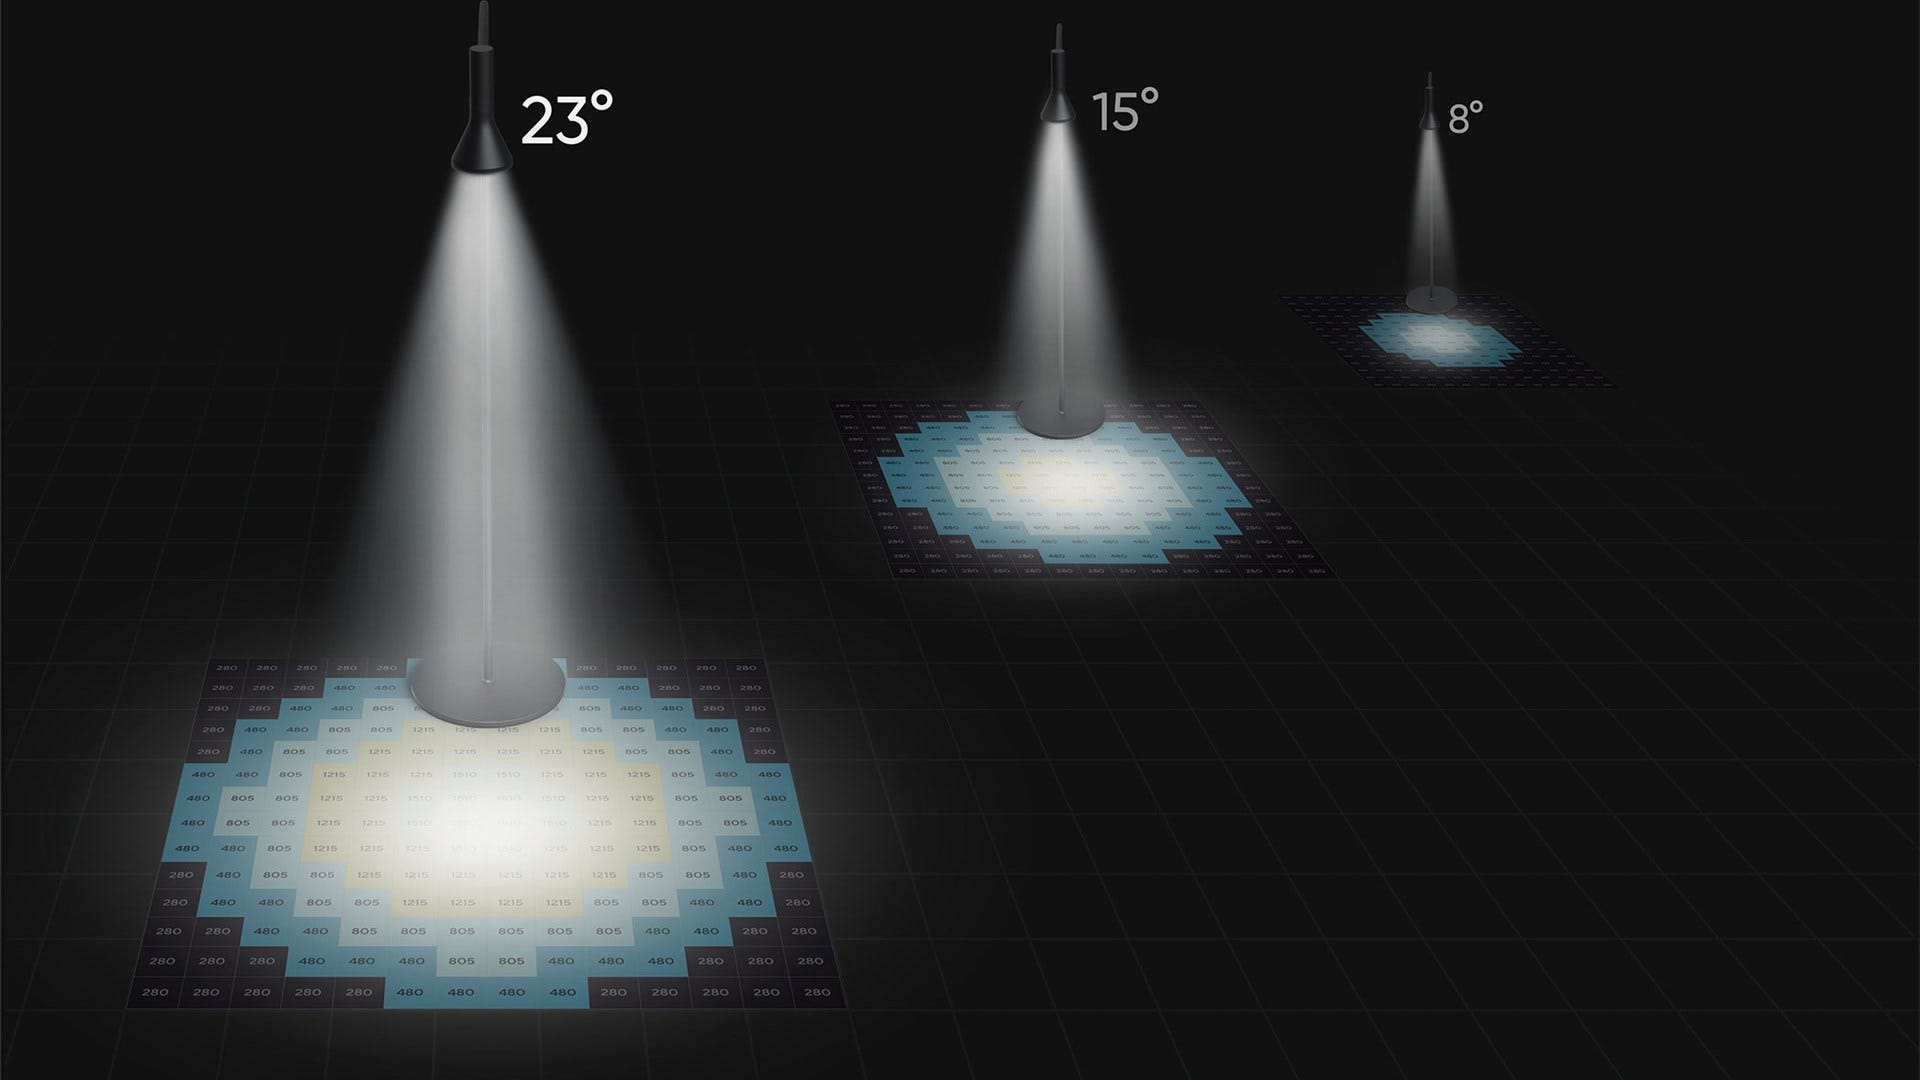 Bilden framhäver spridningen av ljus vid olika ljusstyrkanivåer